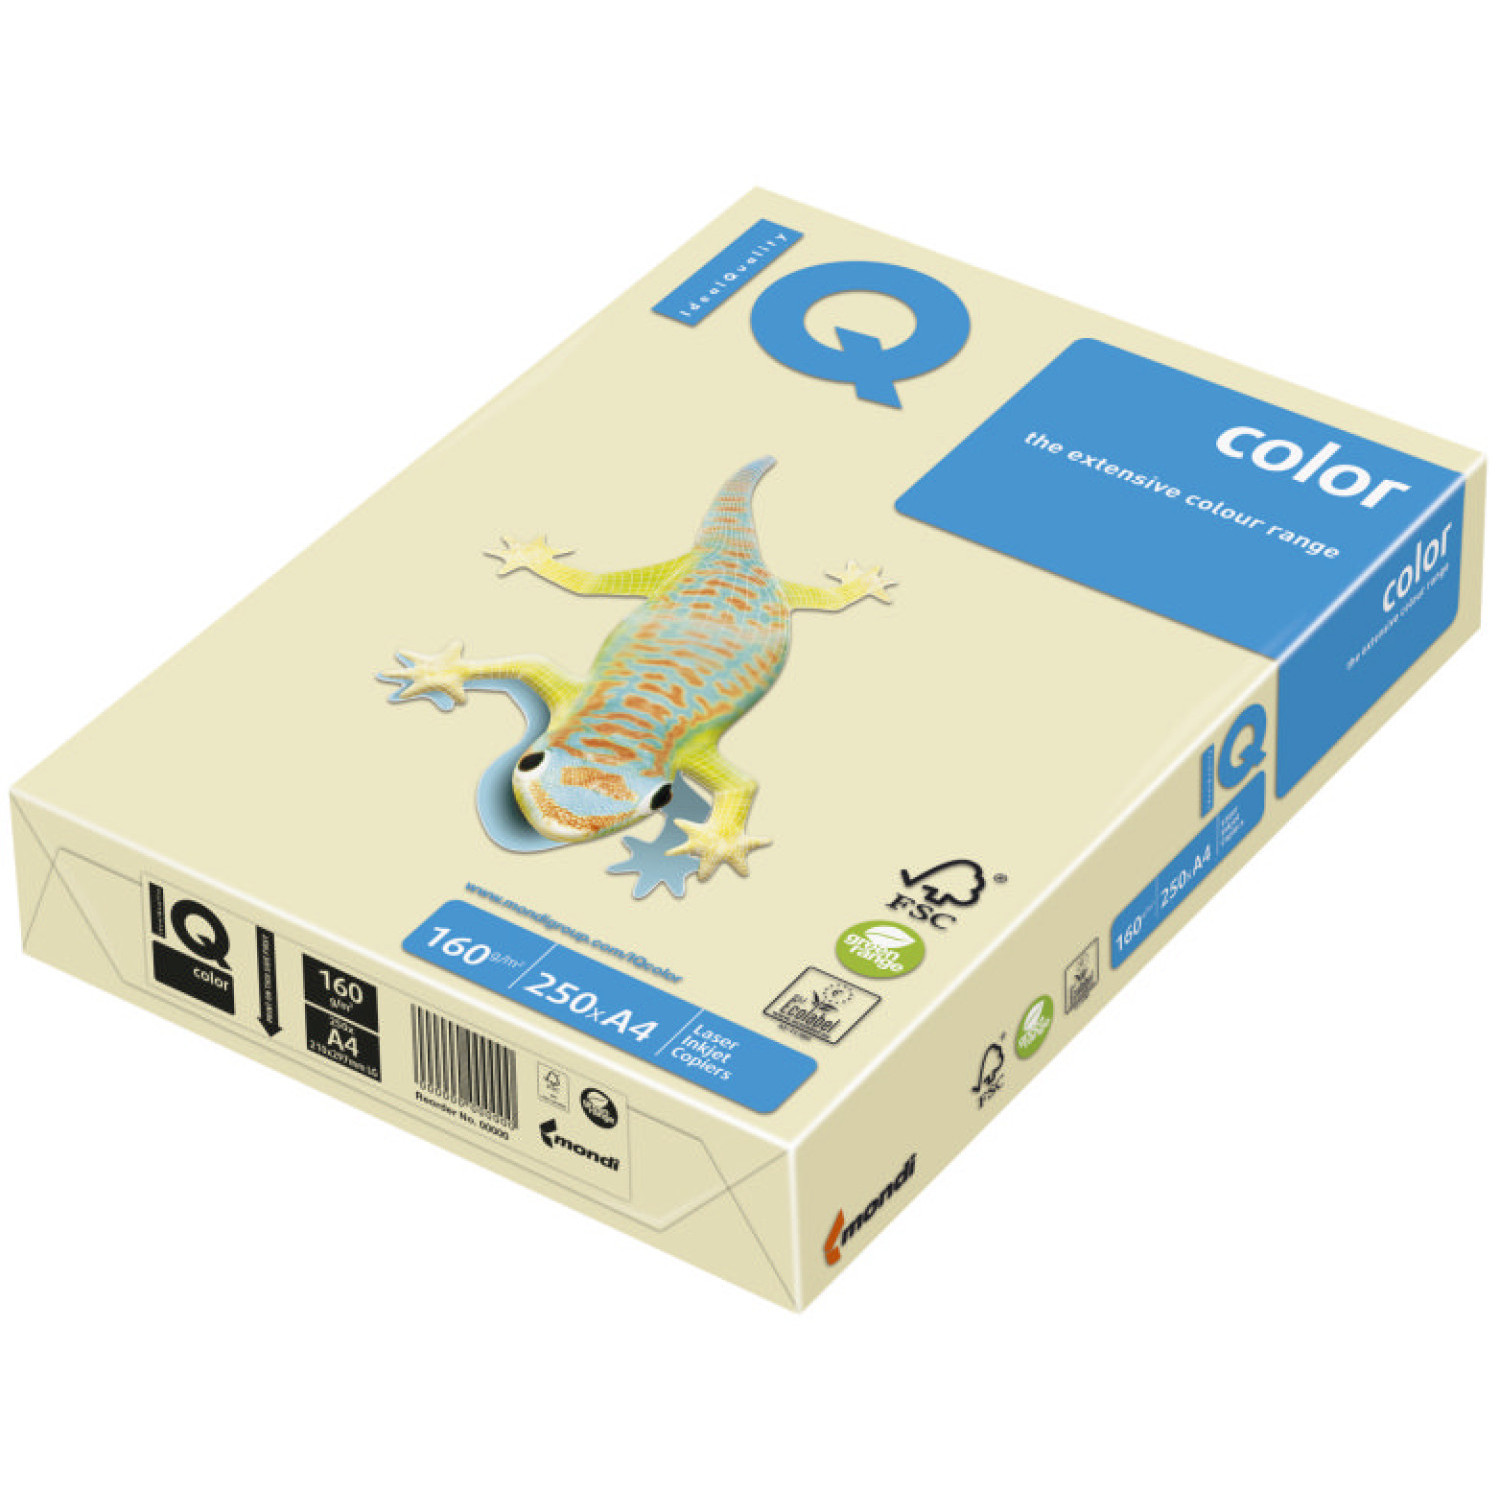 Копирен картон IQ BE66, 160 гр., ванилия